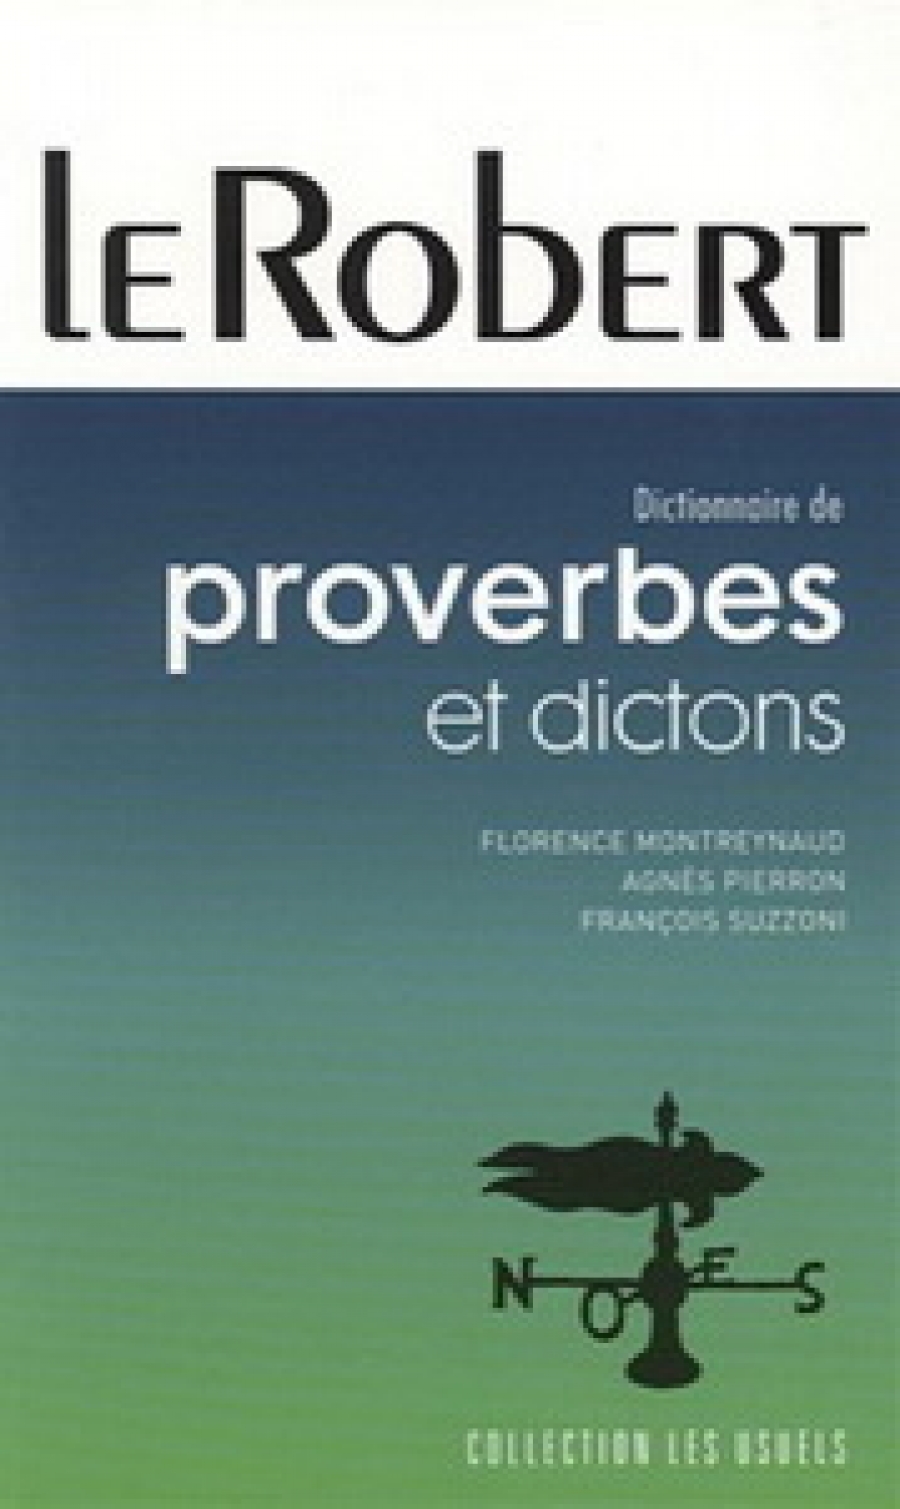 Florence M. Dictionnaire de Proverbes et Dictons 